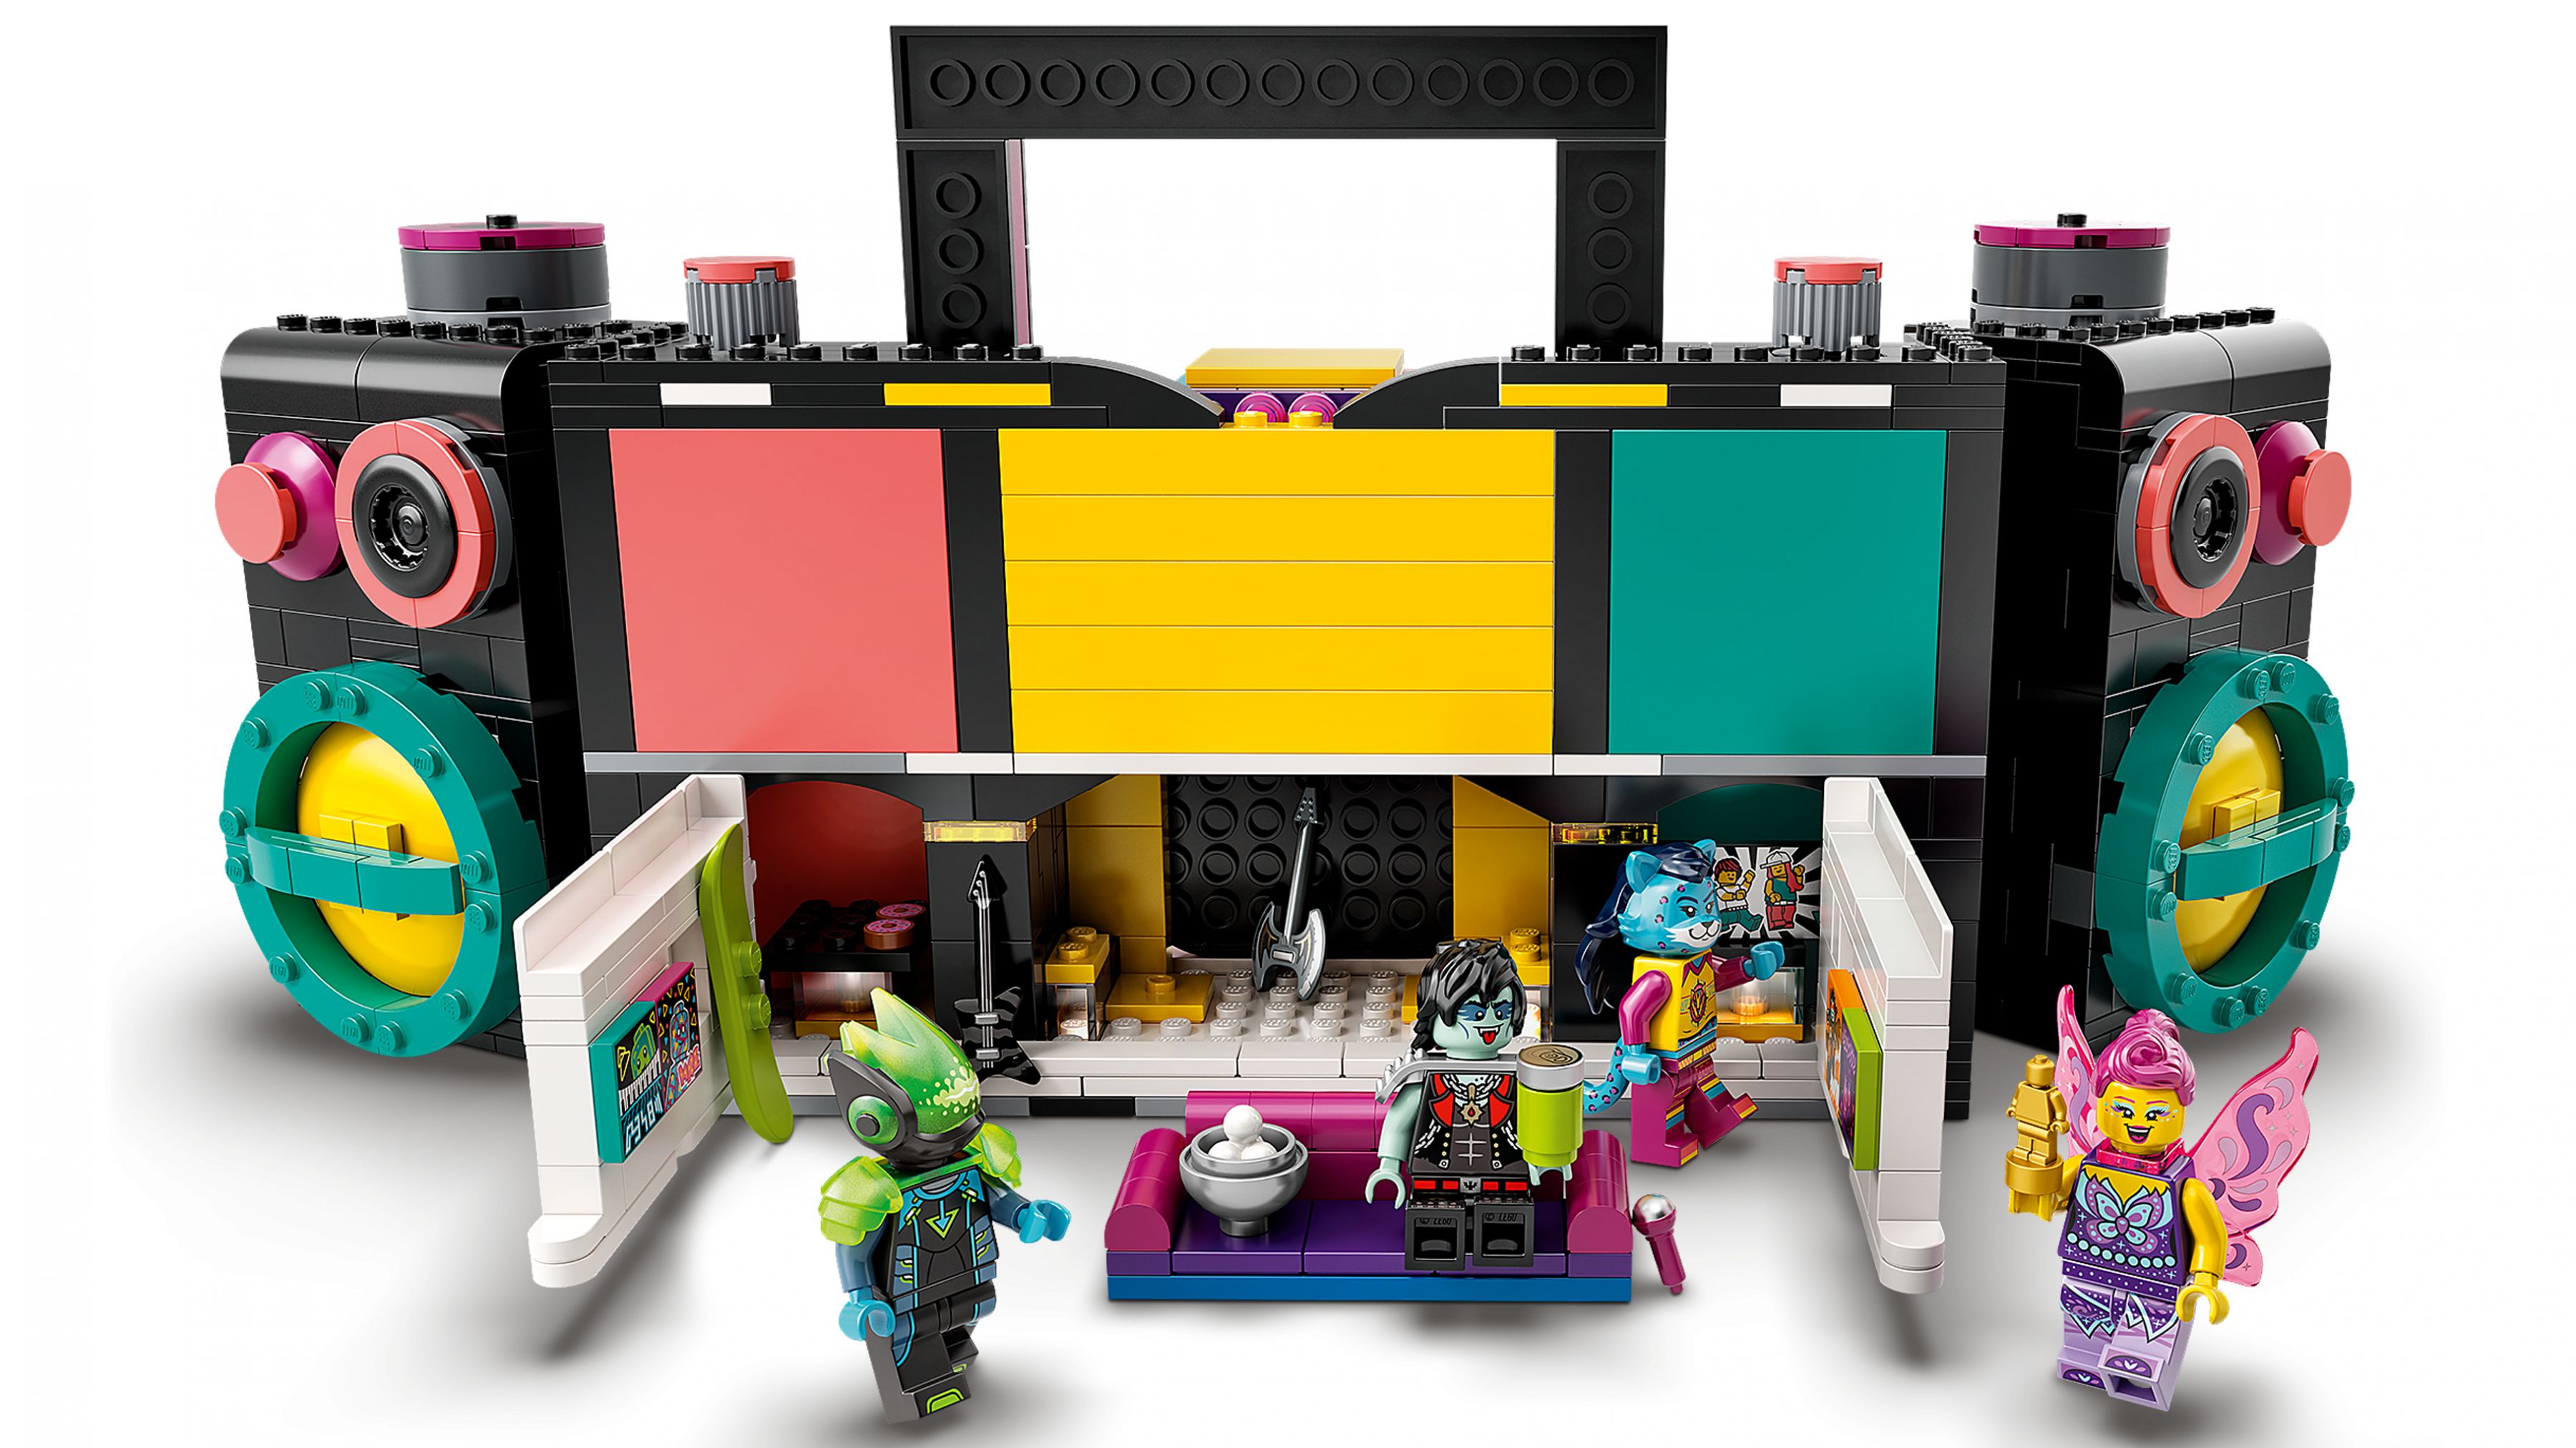 LEGO Vidiyo 43115 Boombox LEGO_43115_web_sec07_nobg.jpg